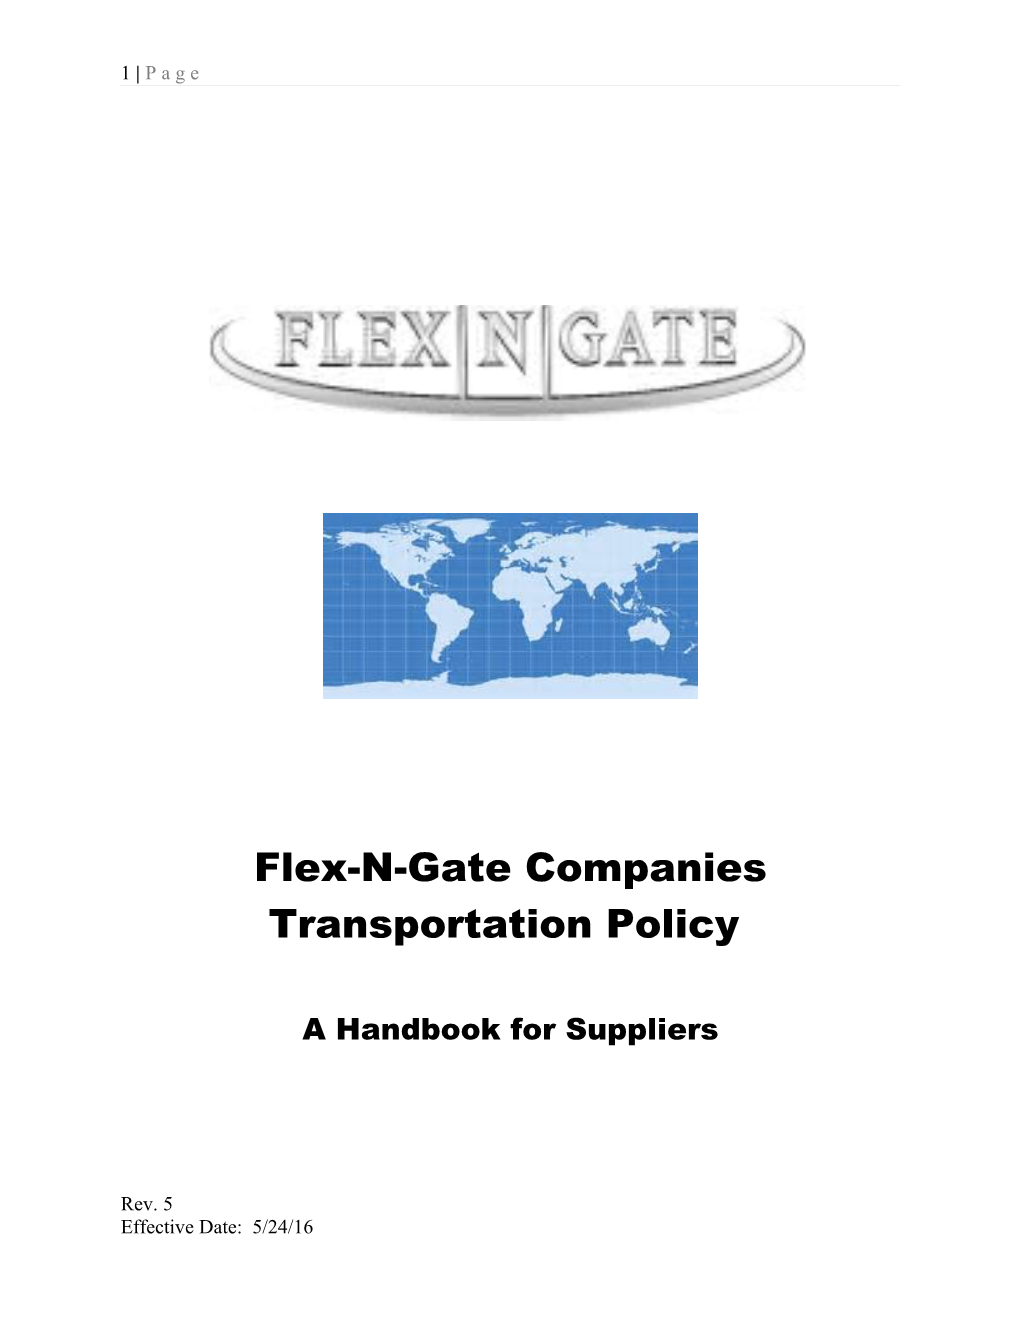 Flex-N-Gate Companies Transportation Policy